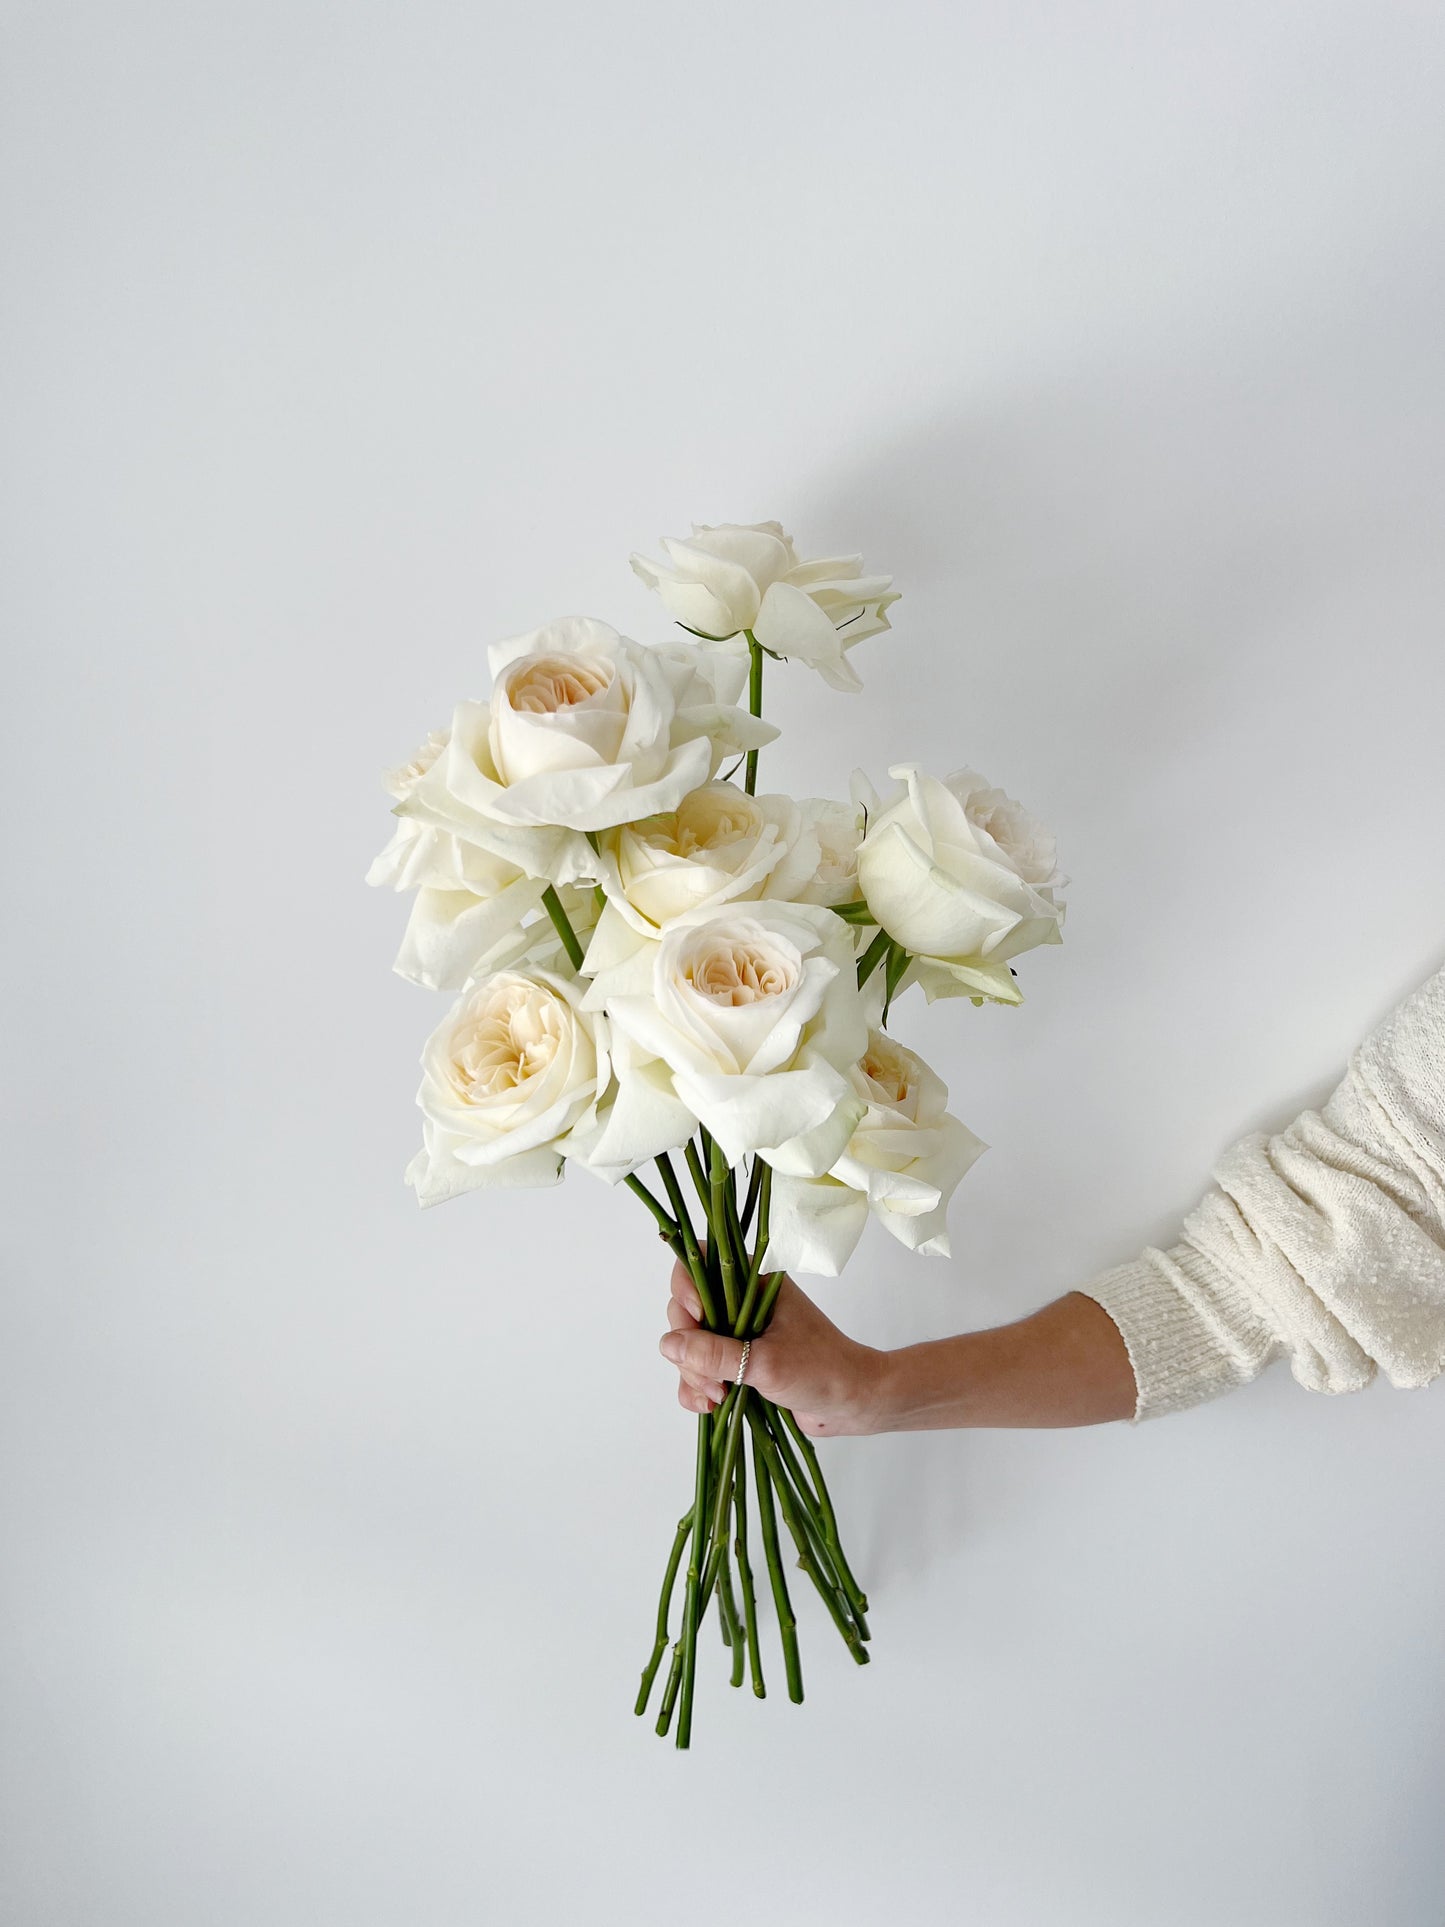 Signature Roses - Classic White Bunch